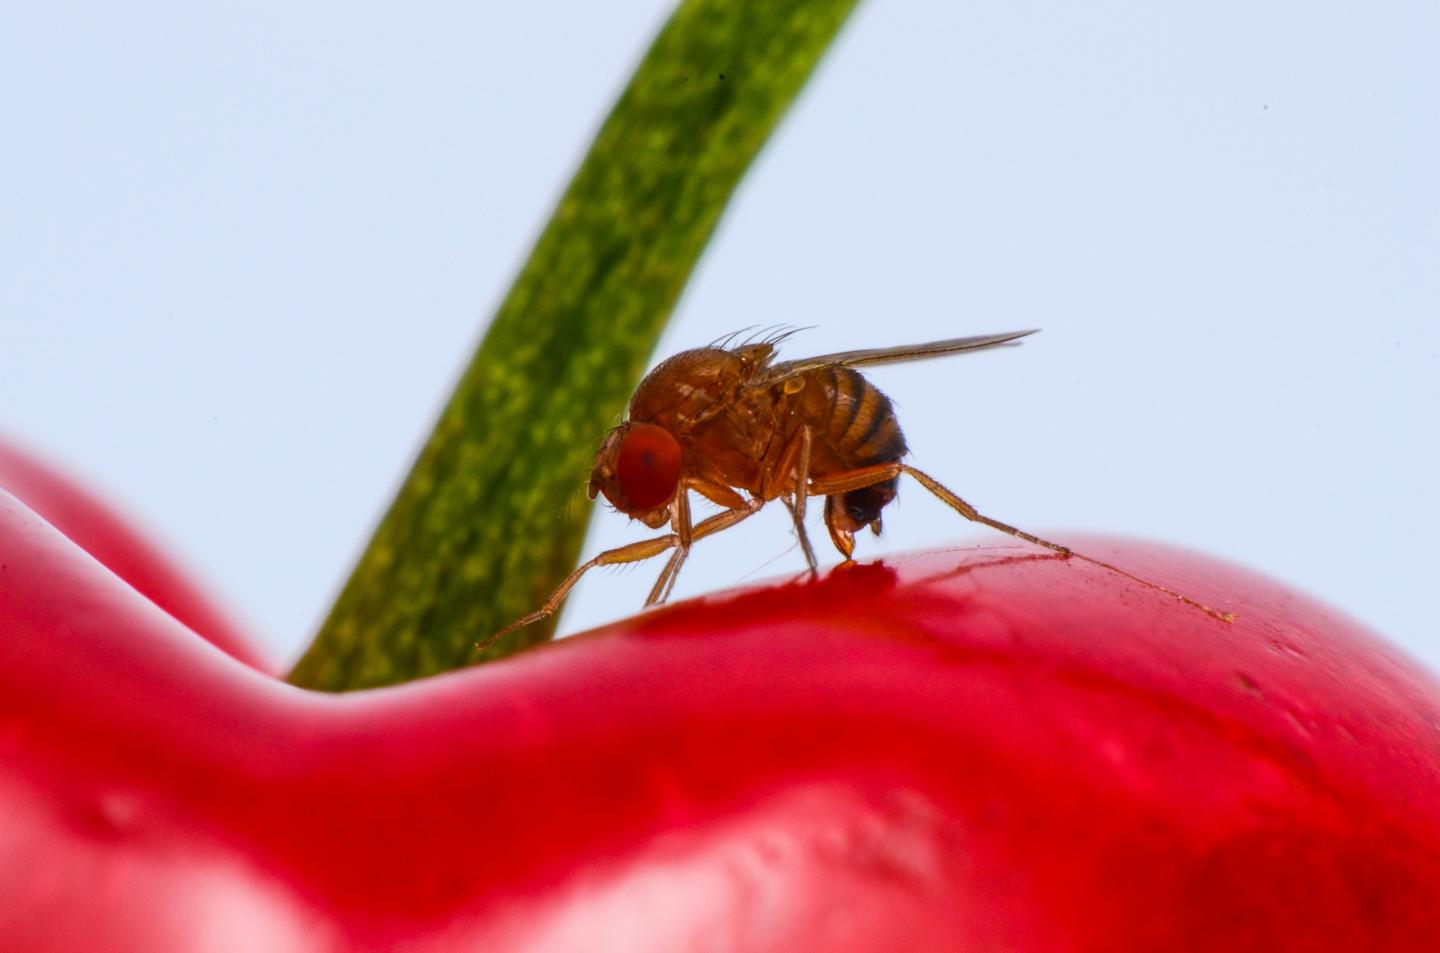 La mosca de las alas manchadas puede dañar a  los cultivos de frambuesa, mora, cereza, sauco, arándano, guinda, entre otros